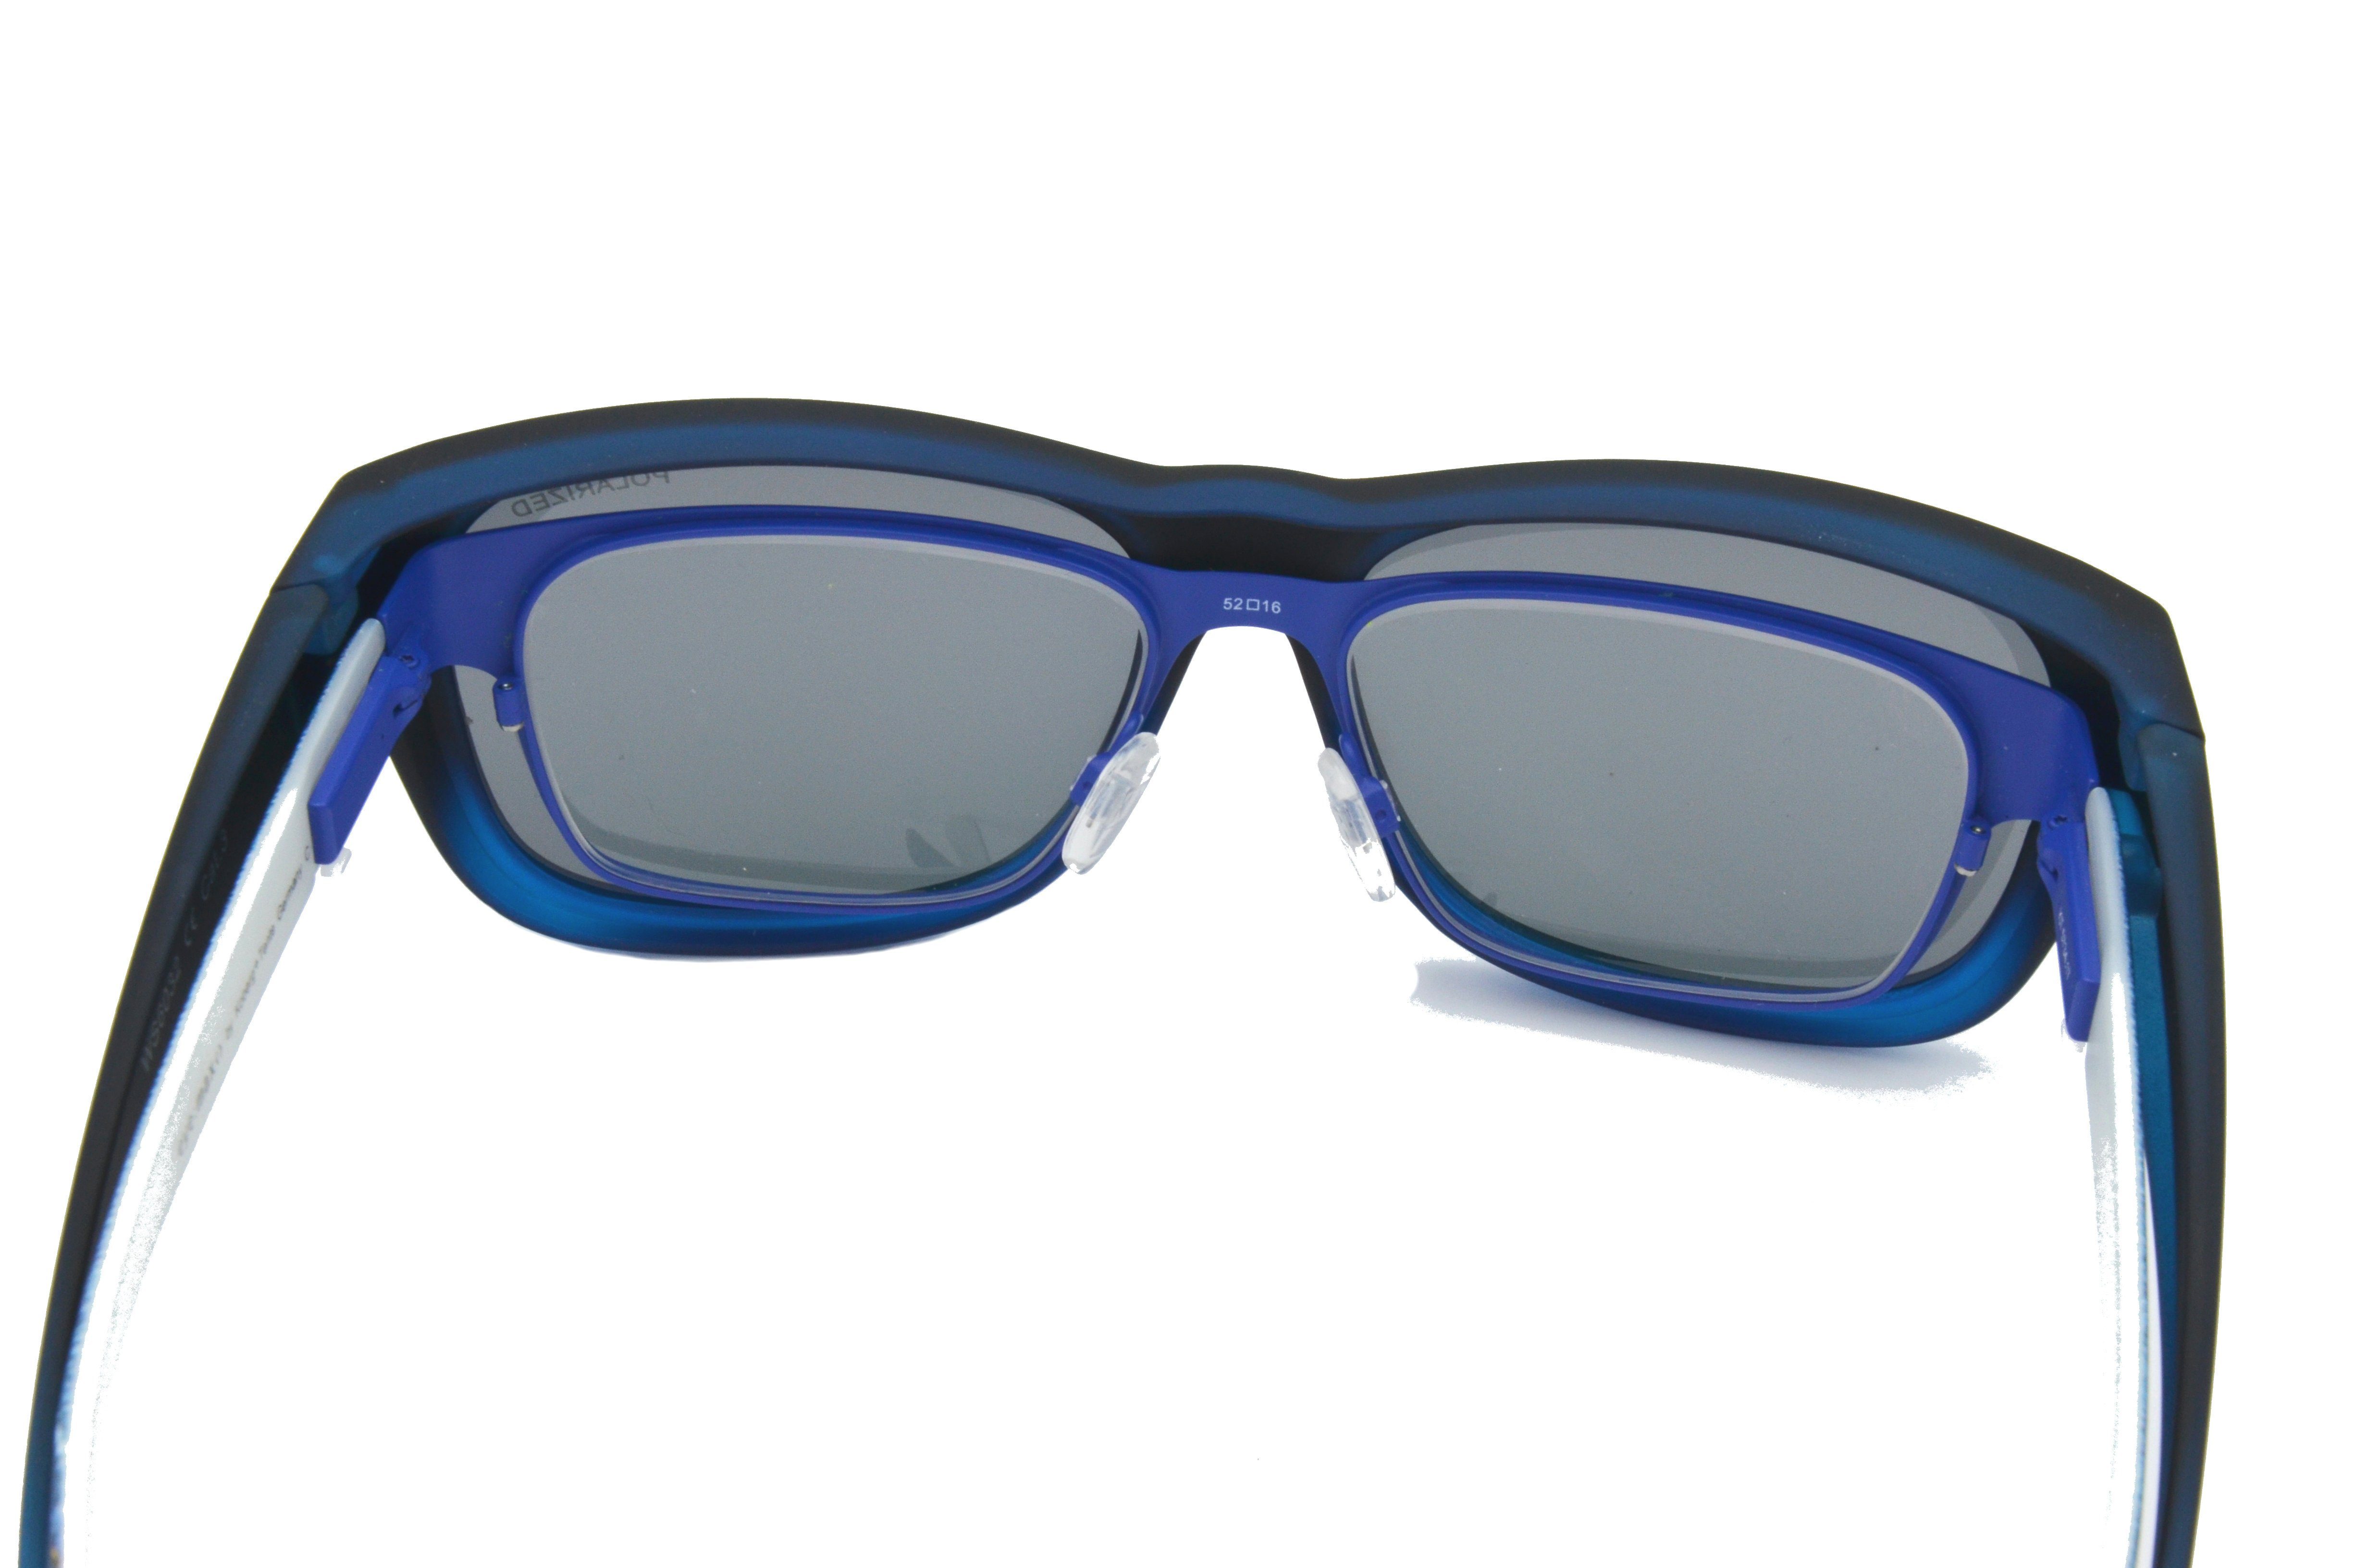 Gamswild Sportbrille WS6022 Überbrille Passform, universelle schwarz G15, unisex, blau, Damen Herren, Sonnenbrille Sportbrille Rubbertouchbeschichtung beere